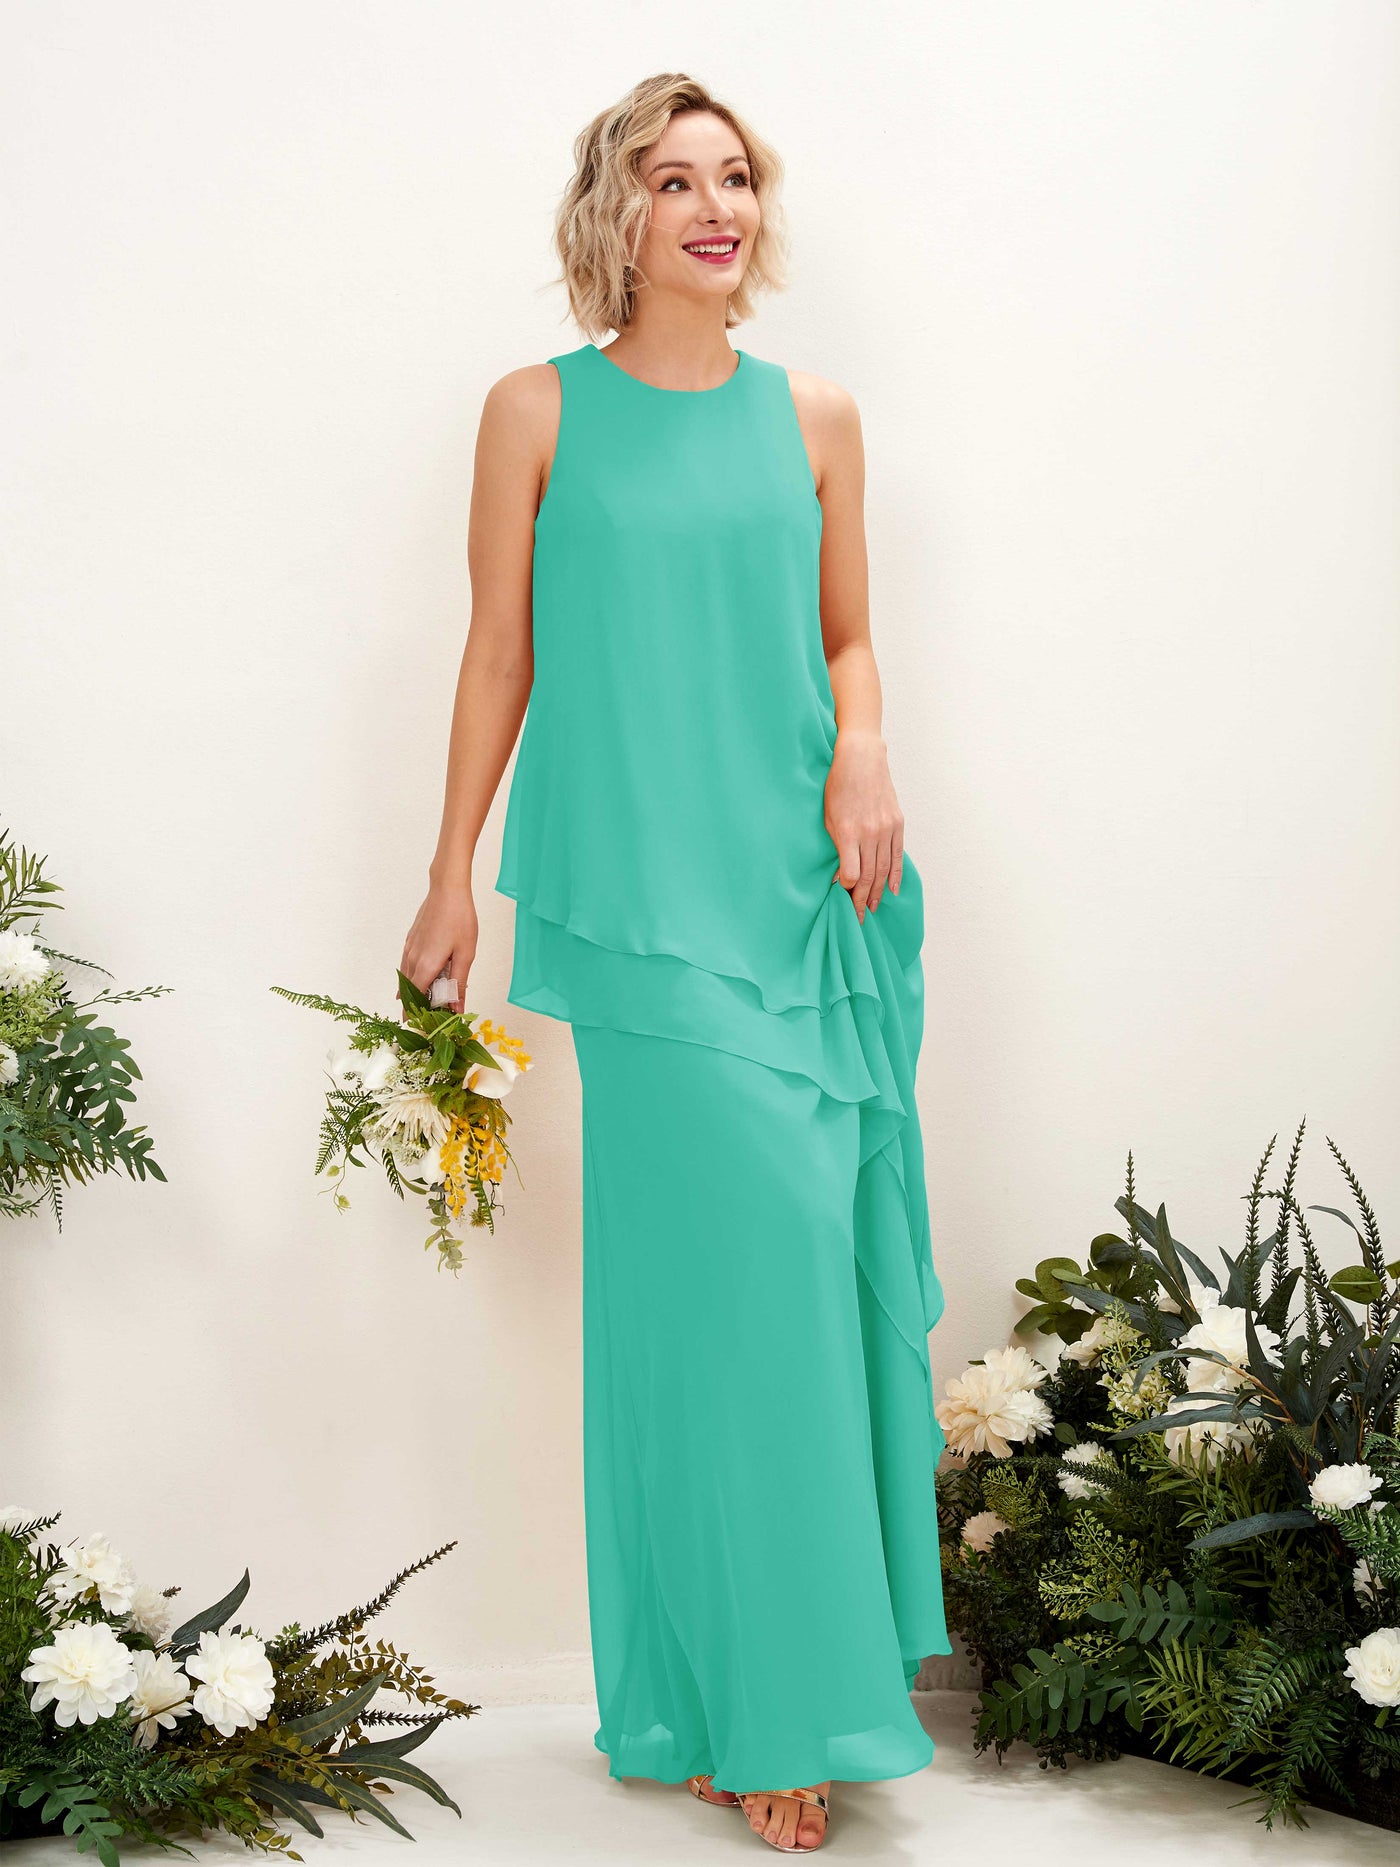 Round Sleeveless Chiffon Bridesmaid Dress - Tiffany (81222332)#color_tiffany